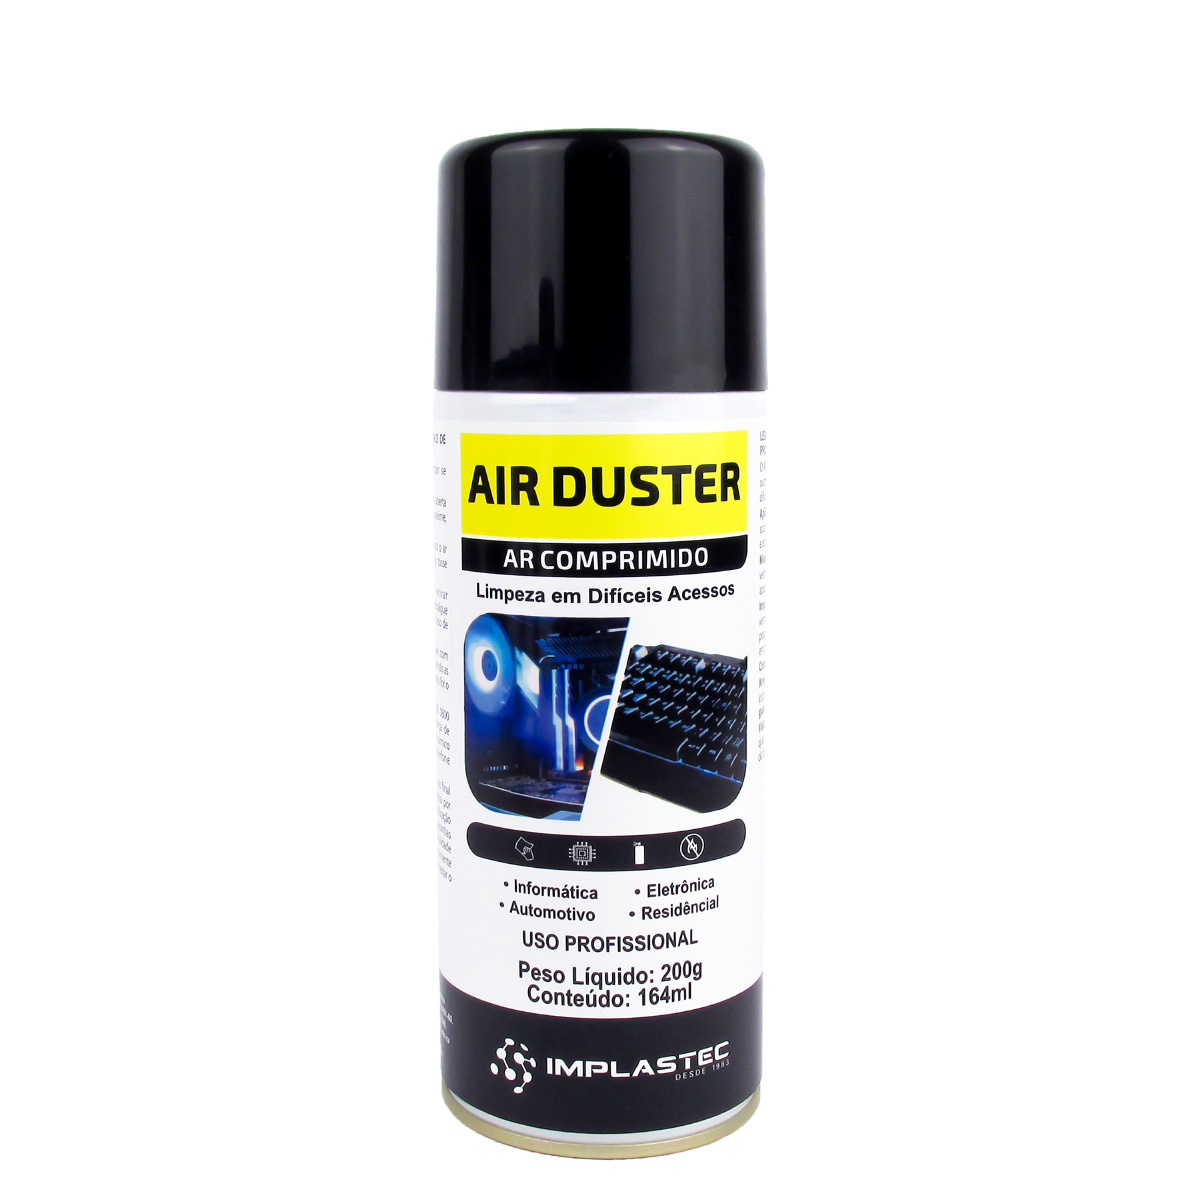 Air Duster Pro - Removedor de Pó - Ar Comprimido - 164ml - Implastec